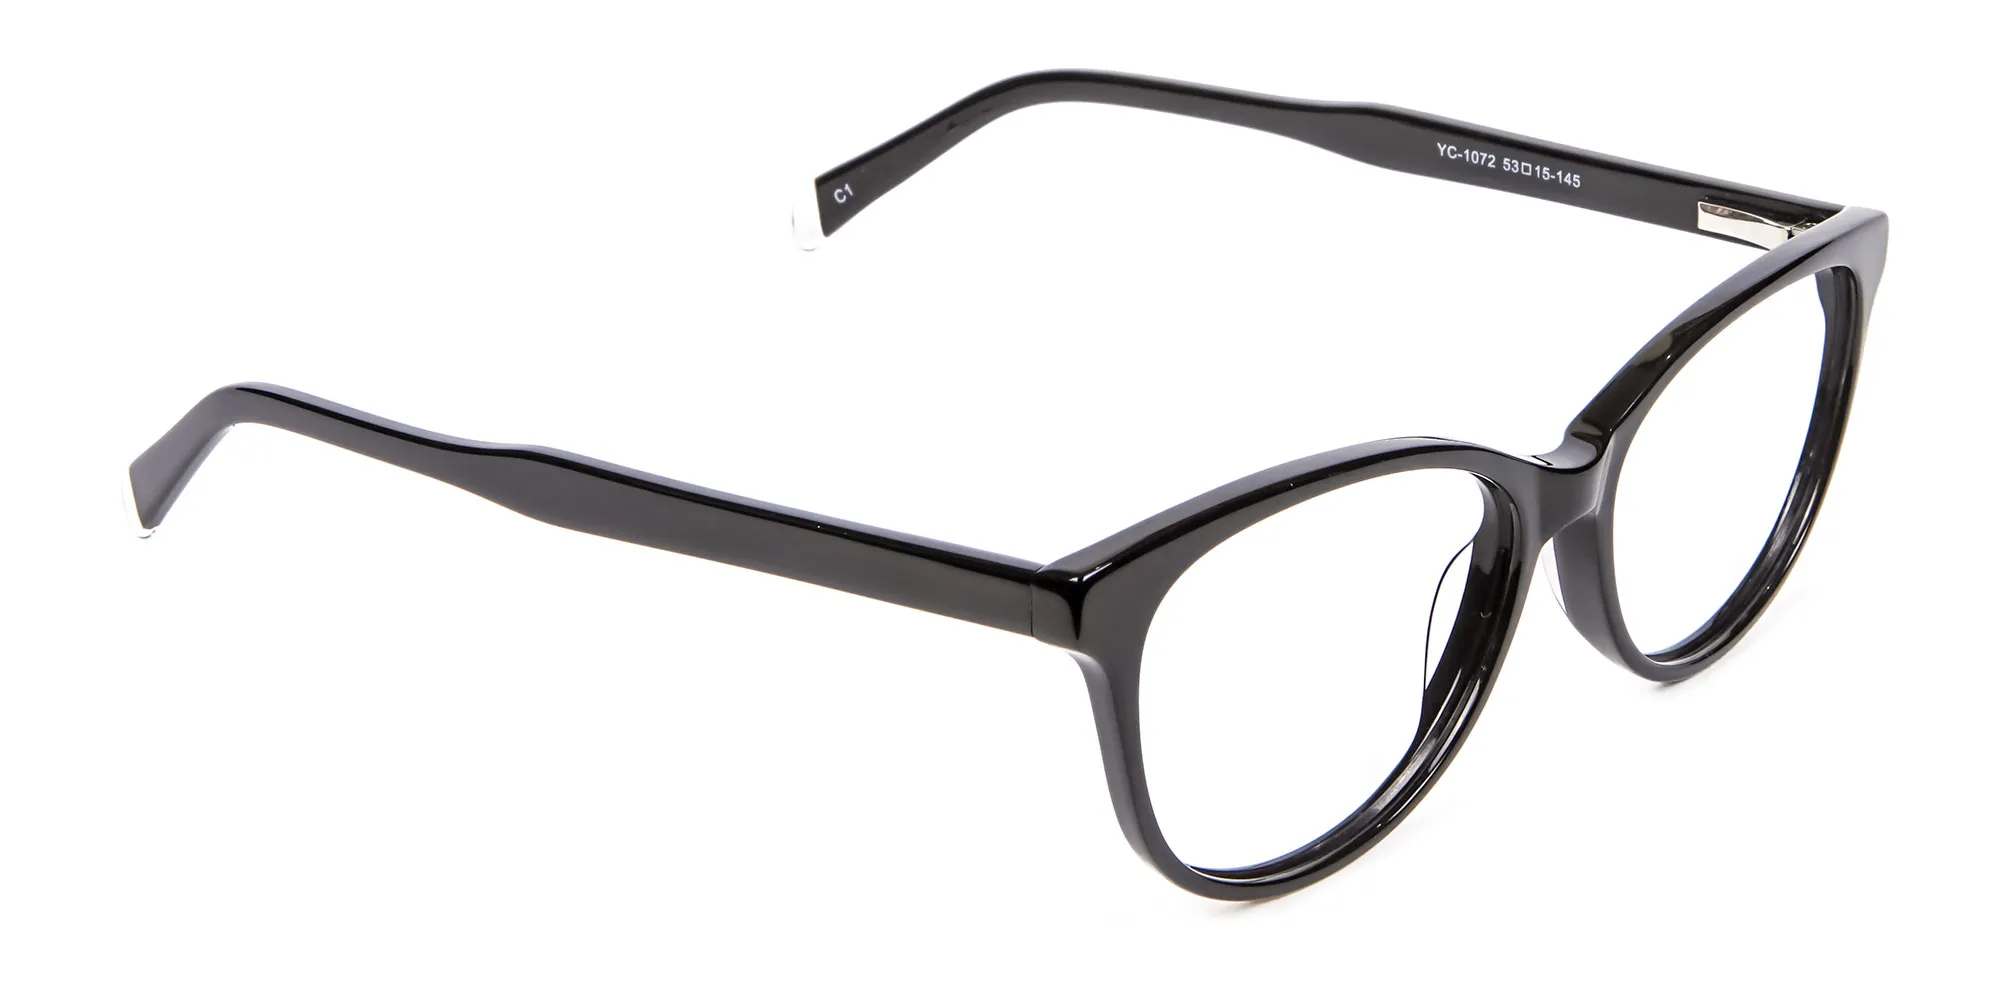 Black Cat Eye Glasses - 1